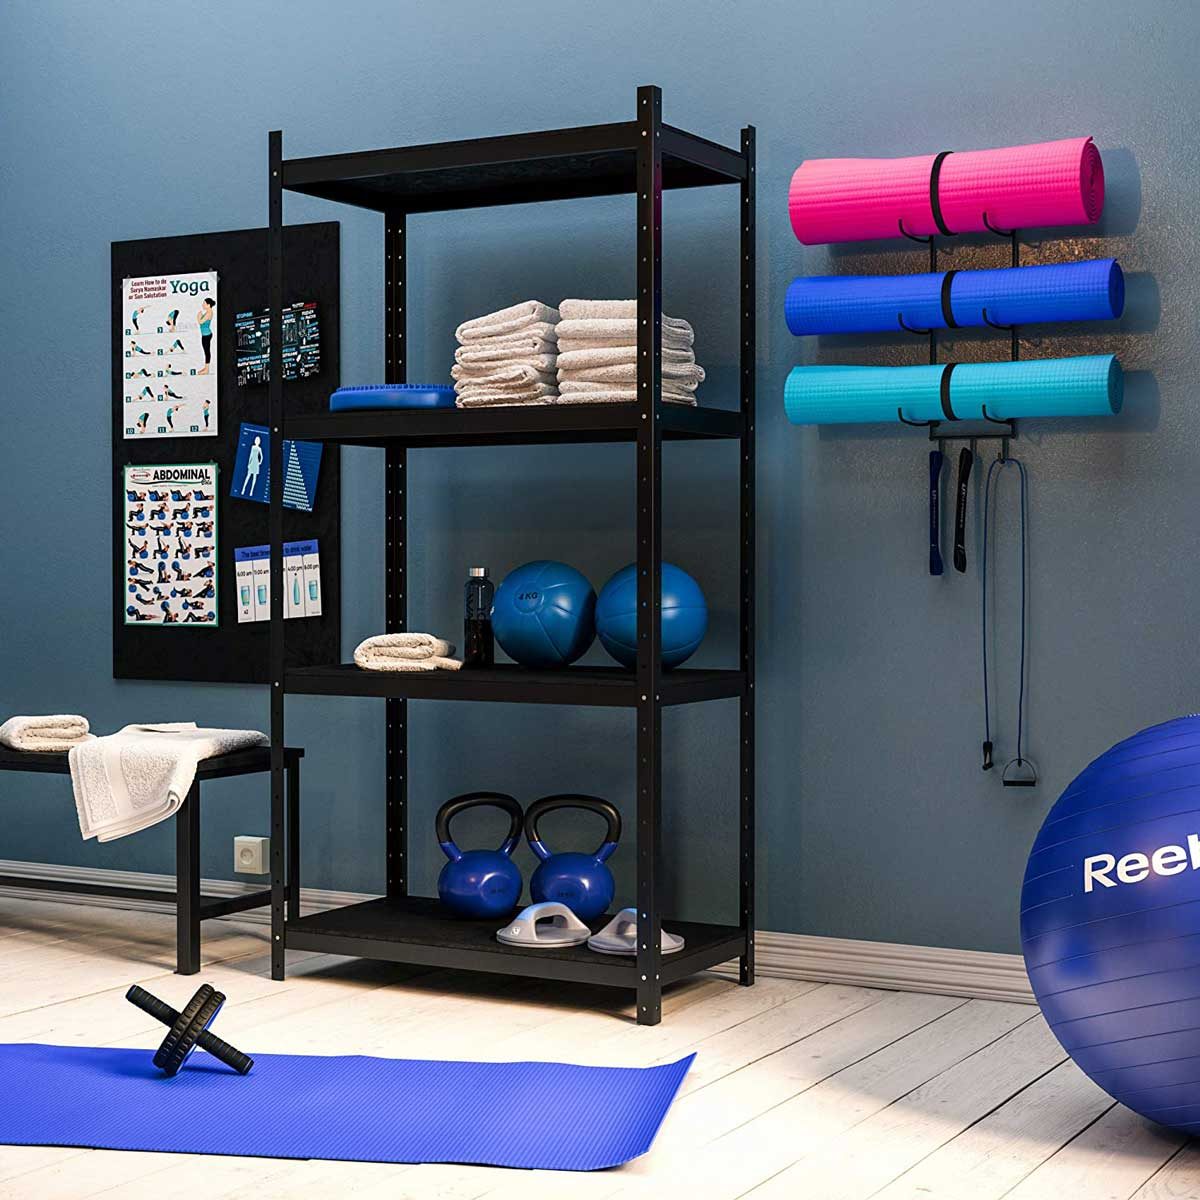 Home Gym Storage: 9 Best Ideas